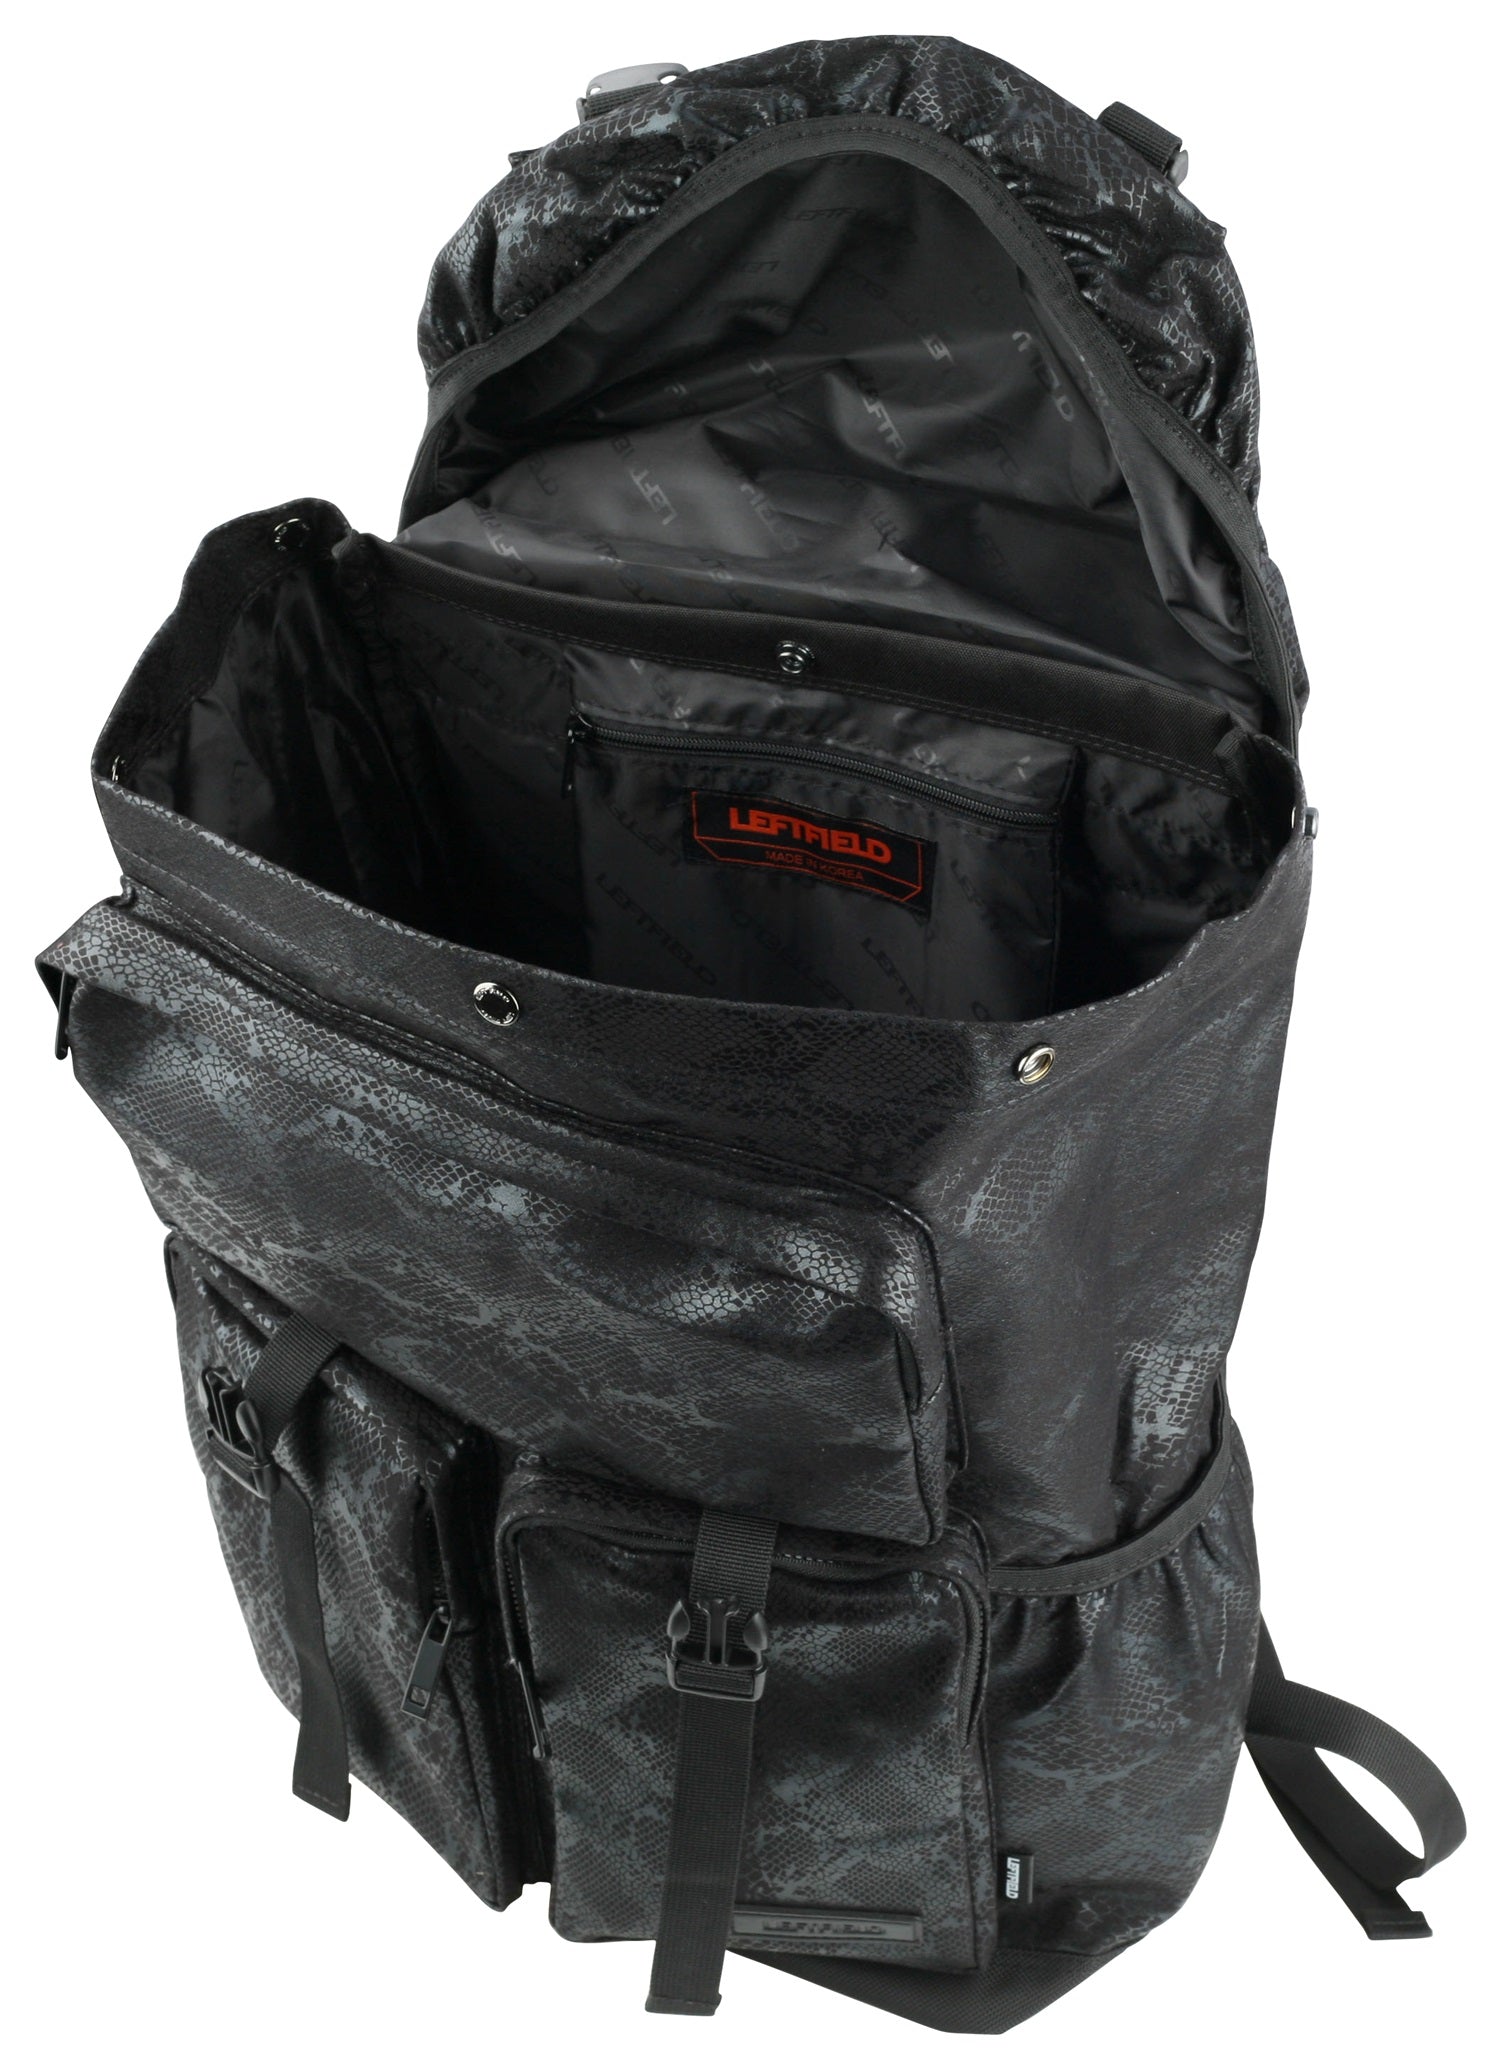 Black Snakeskin Patterned Synthetic Leather Backpacks Rucksacks